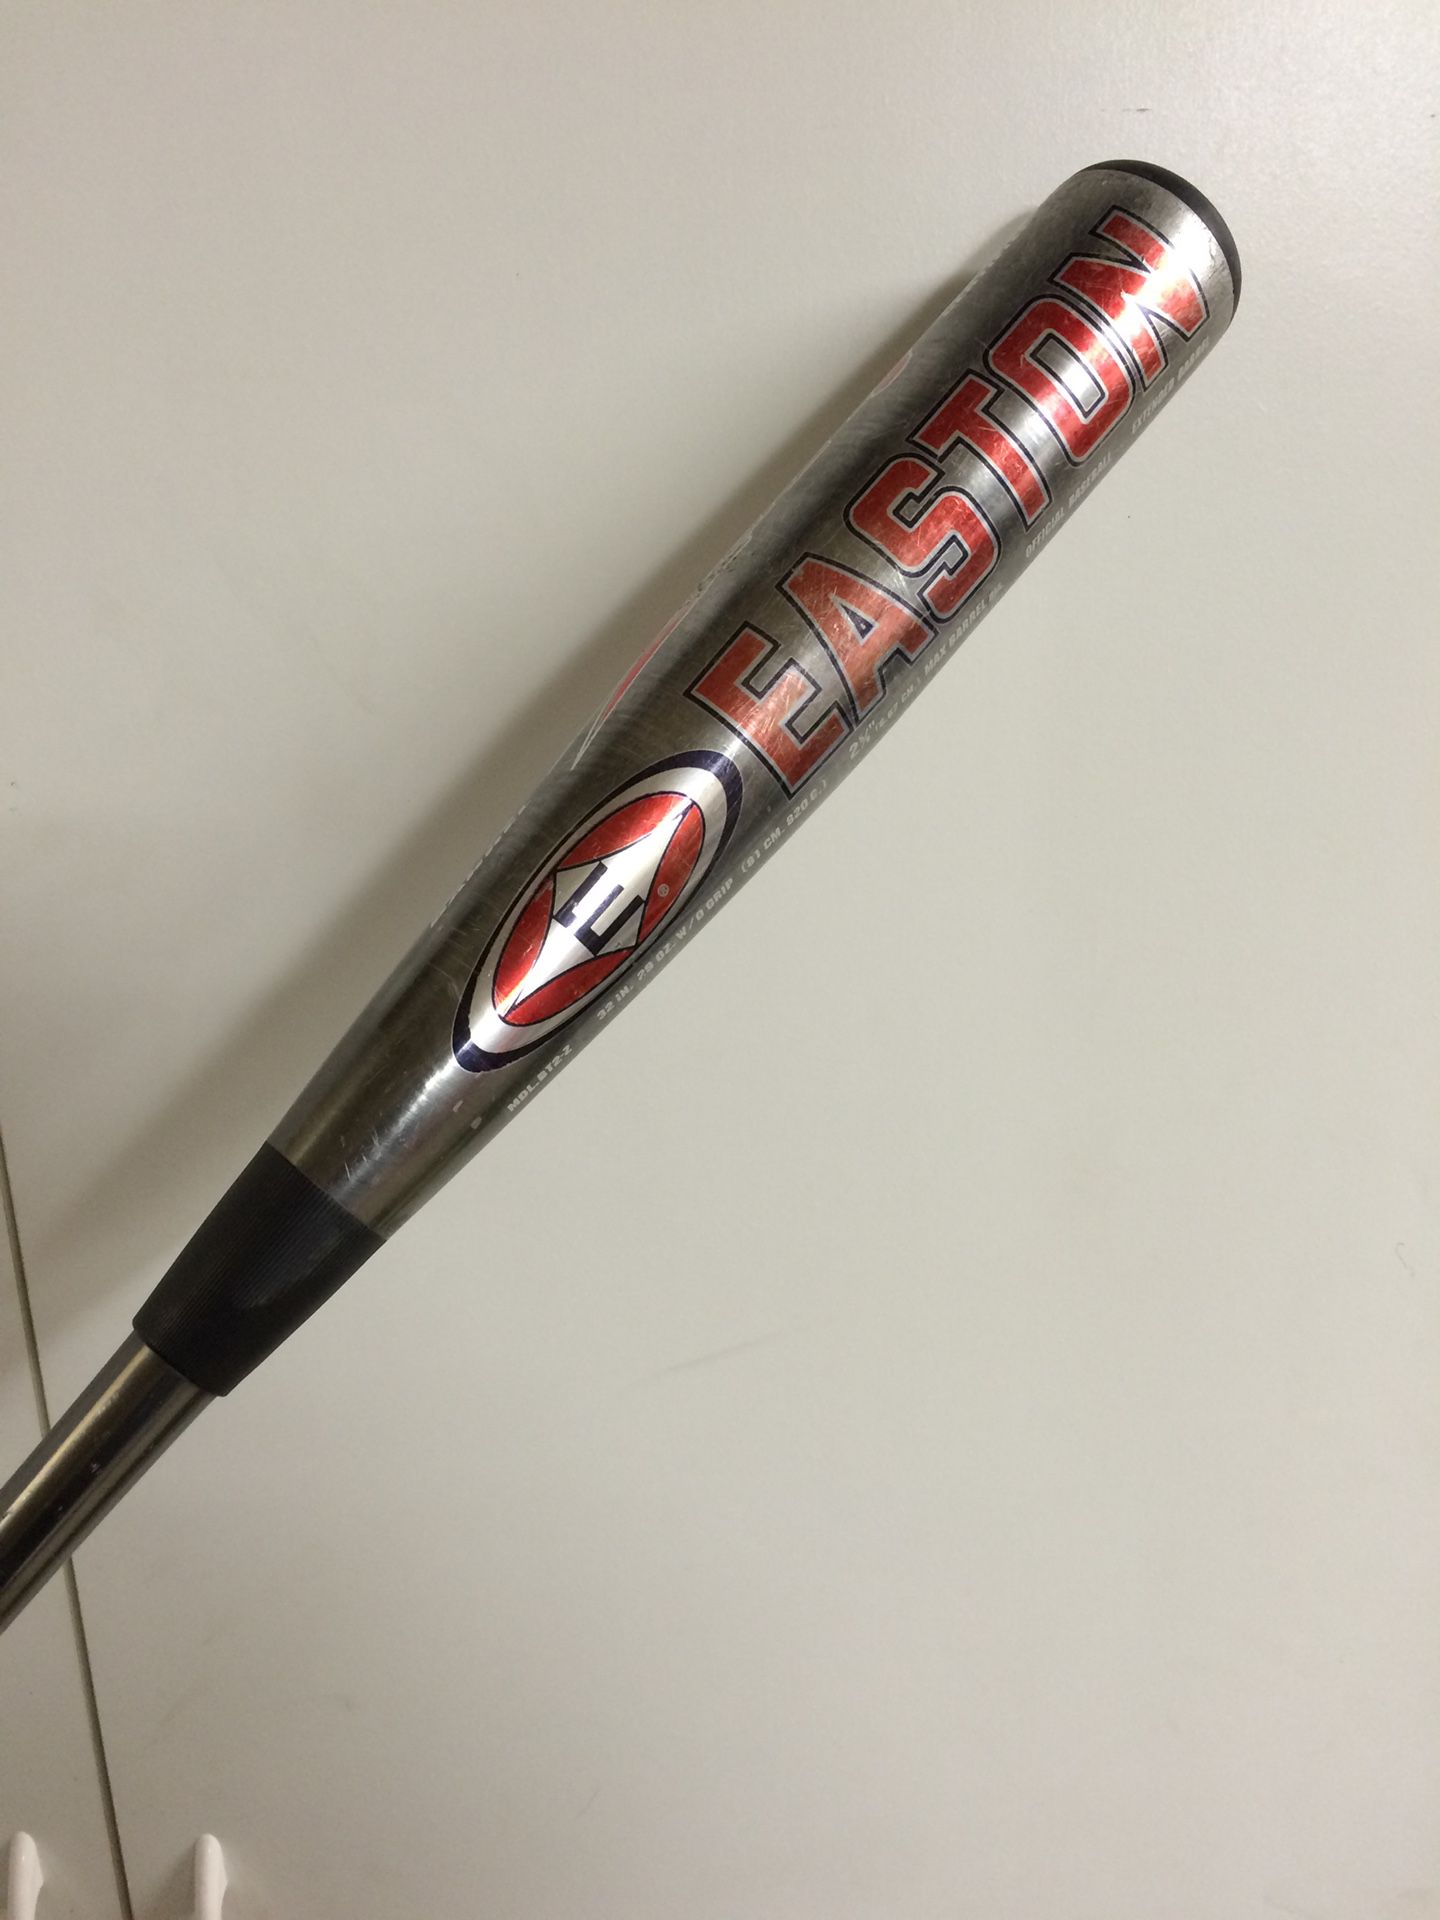 Easton Connexion Z Core -3 baseball bat 2 5/8” barrel